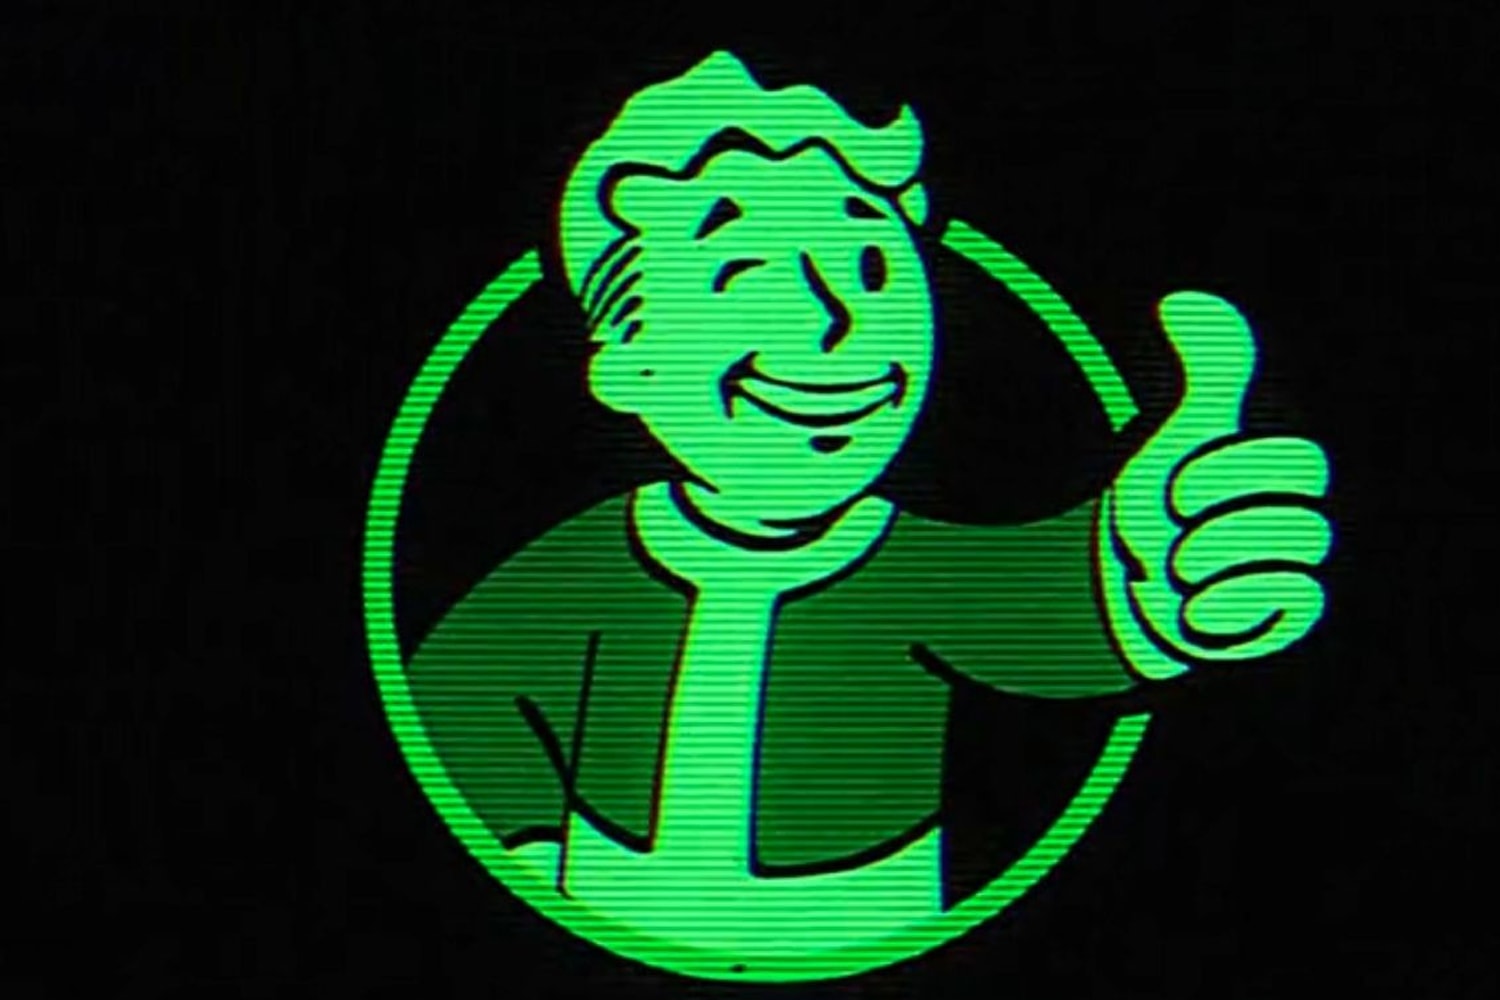 人氣遊戲《異塵餘生 Fallout》改編真人版影集 Prime Video 上線日期正式揭曉